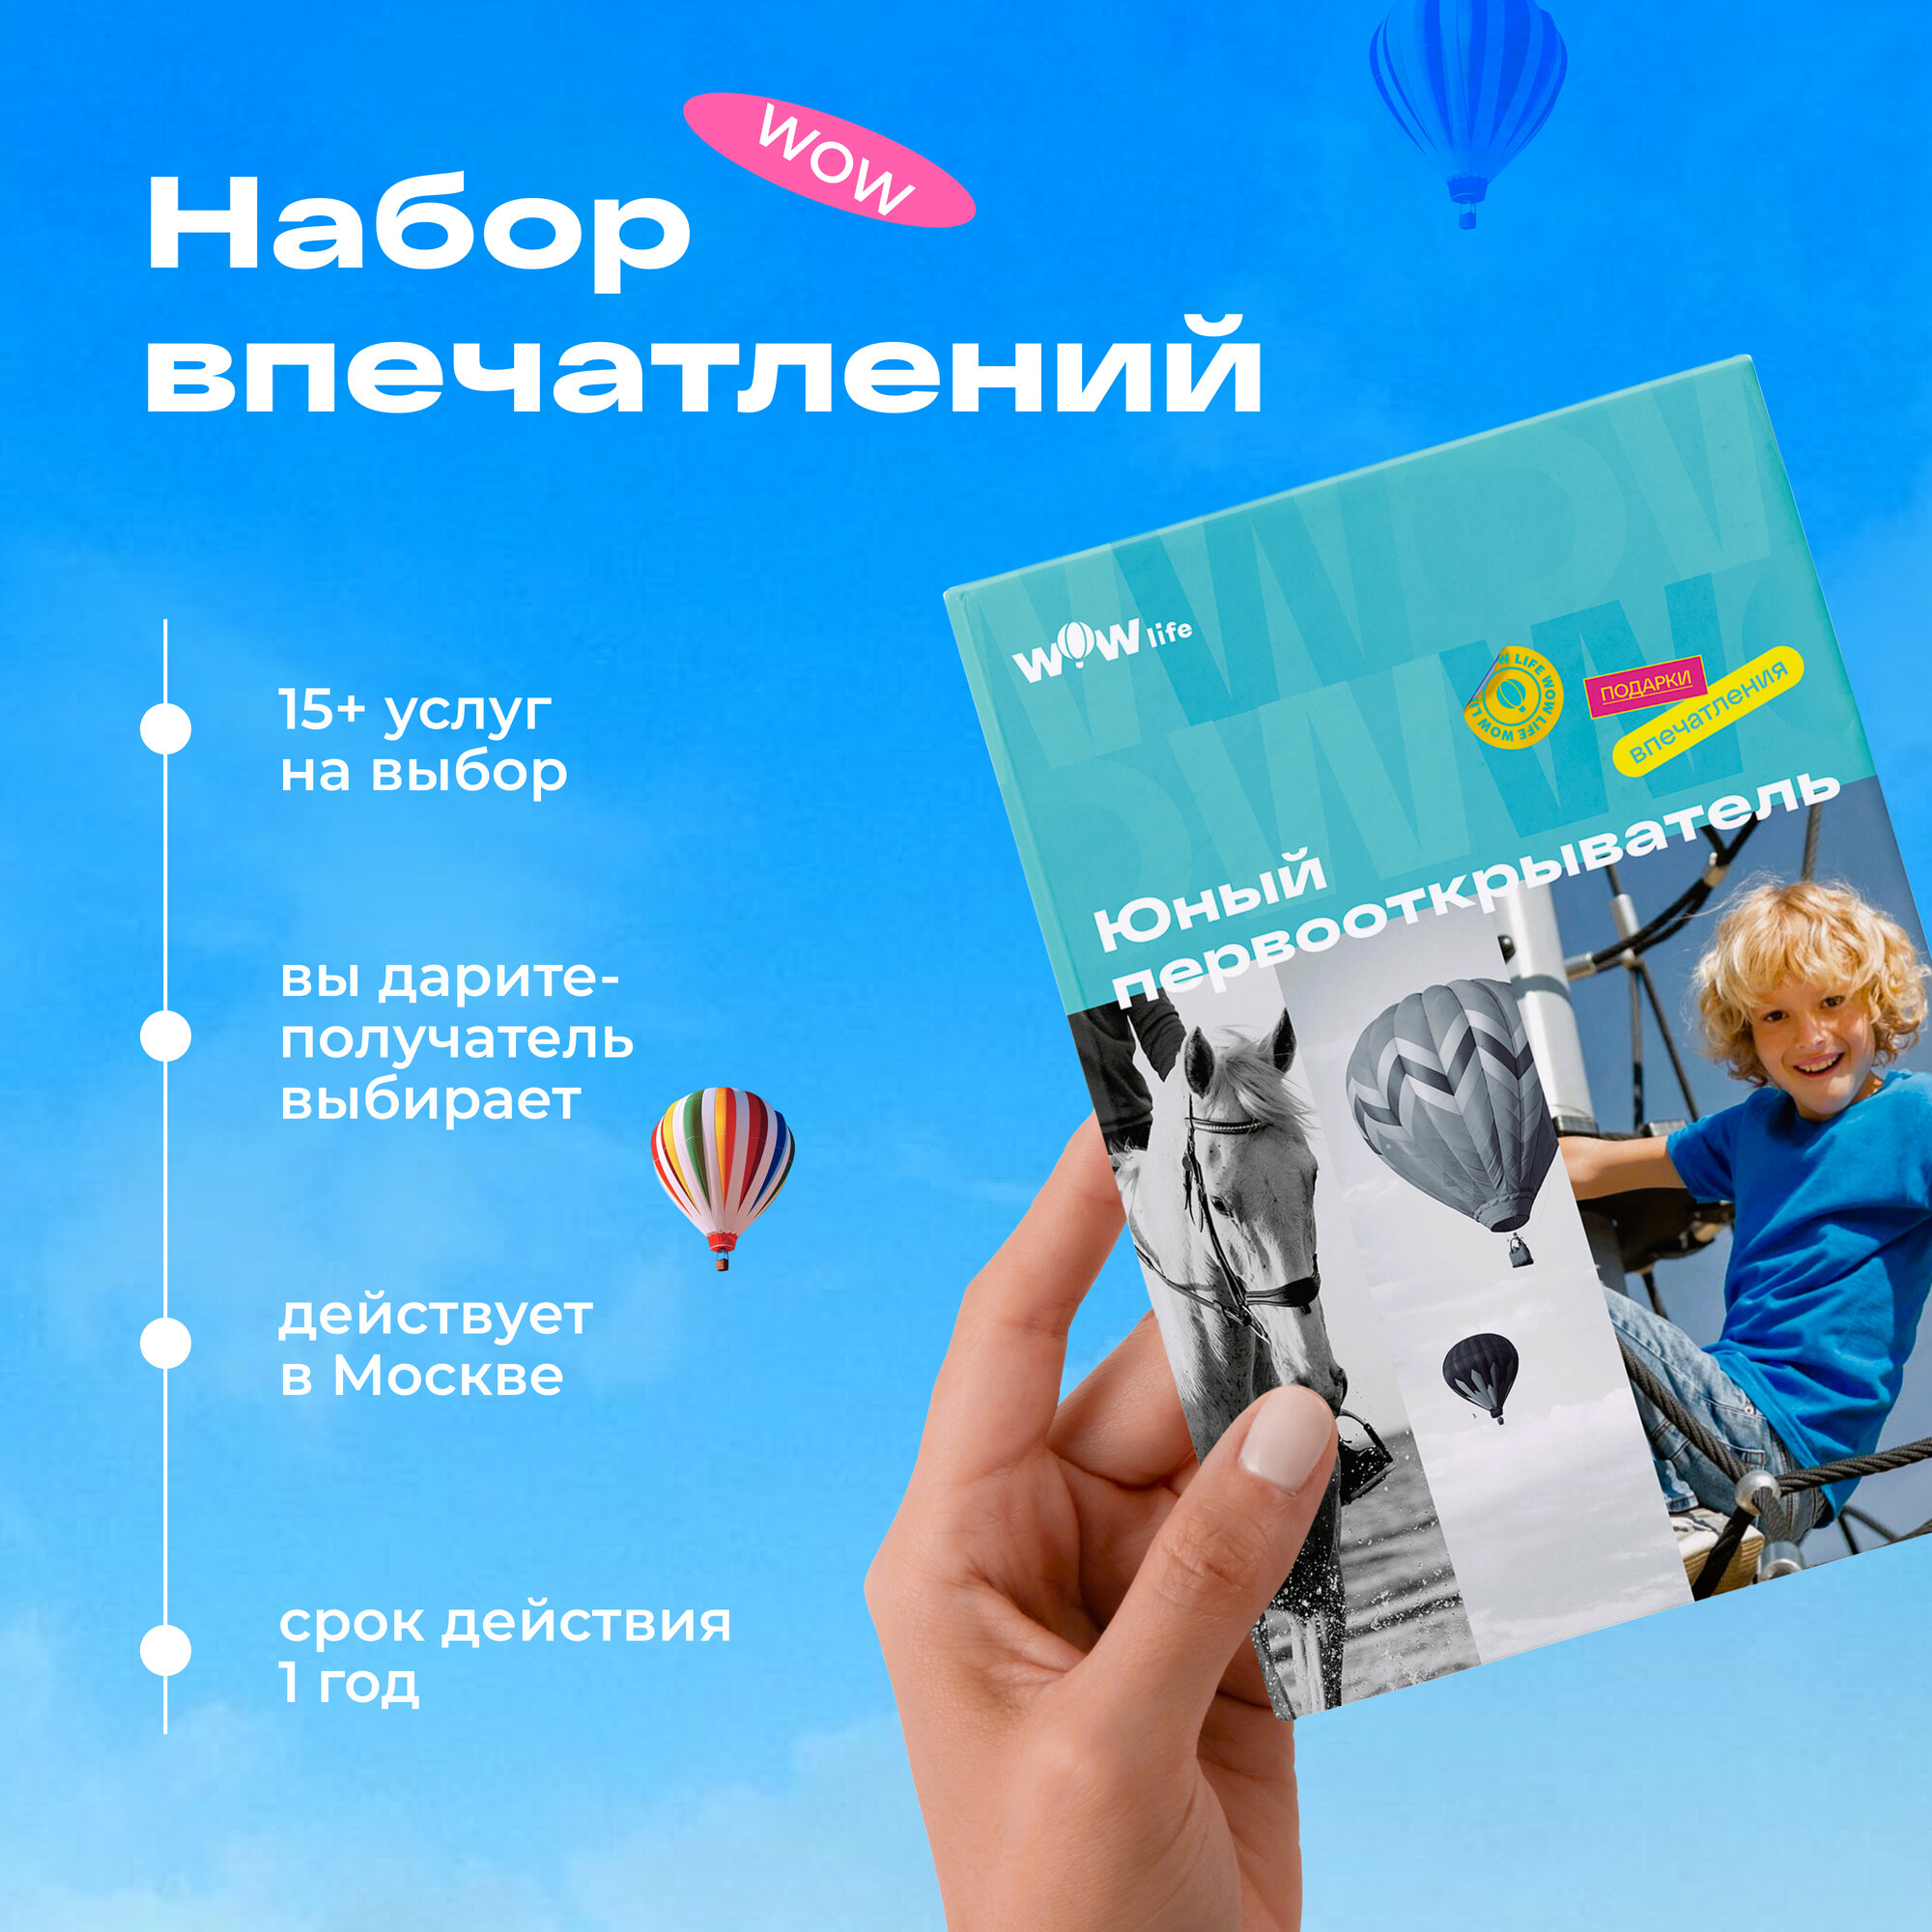 Подарочный сертификат WOWlife "Юный первооткрыватель" - набор из впечатлений на выбор, Москва